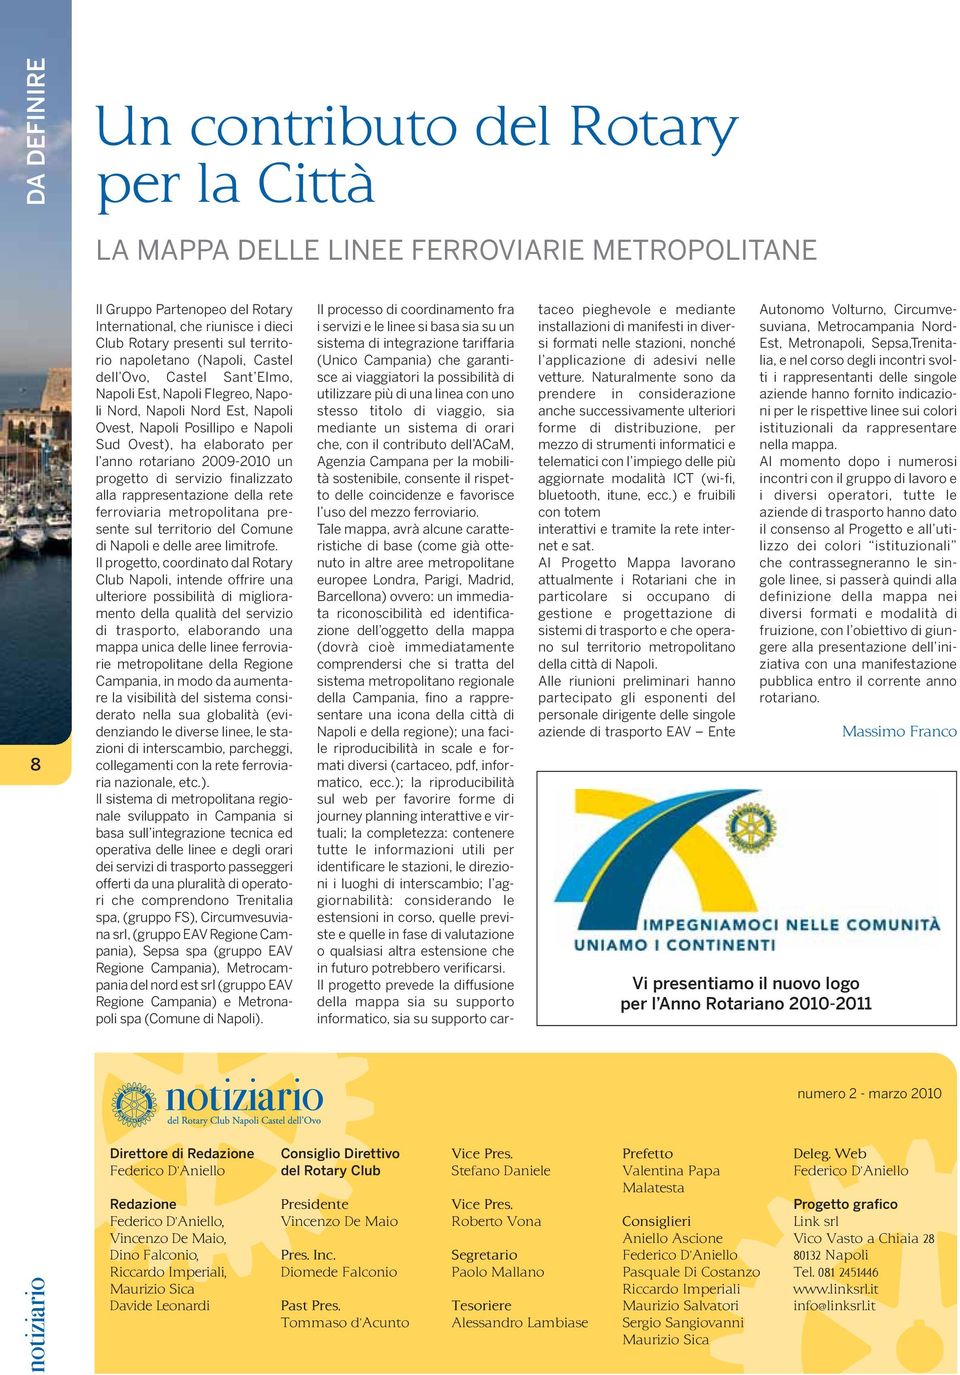 rotariano 2009-2010 un progetto di servizio finalizzato alla rappresentazione della rete ferroviaria metropolitana presente sul territorio del Comune di Napoli e delle aree limitrofe.